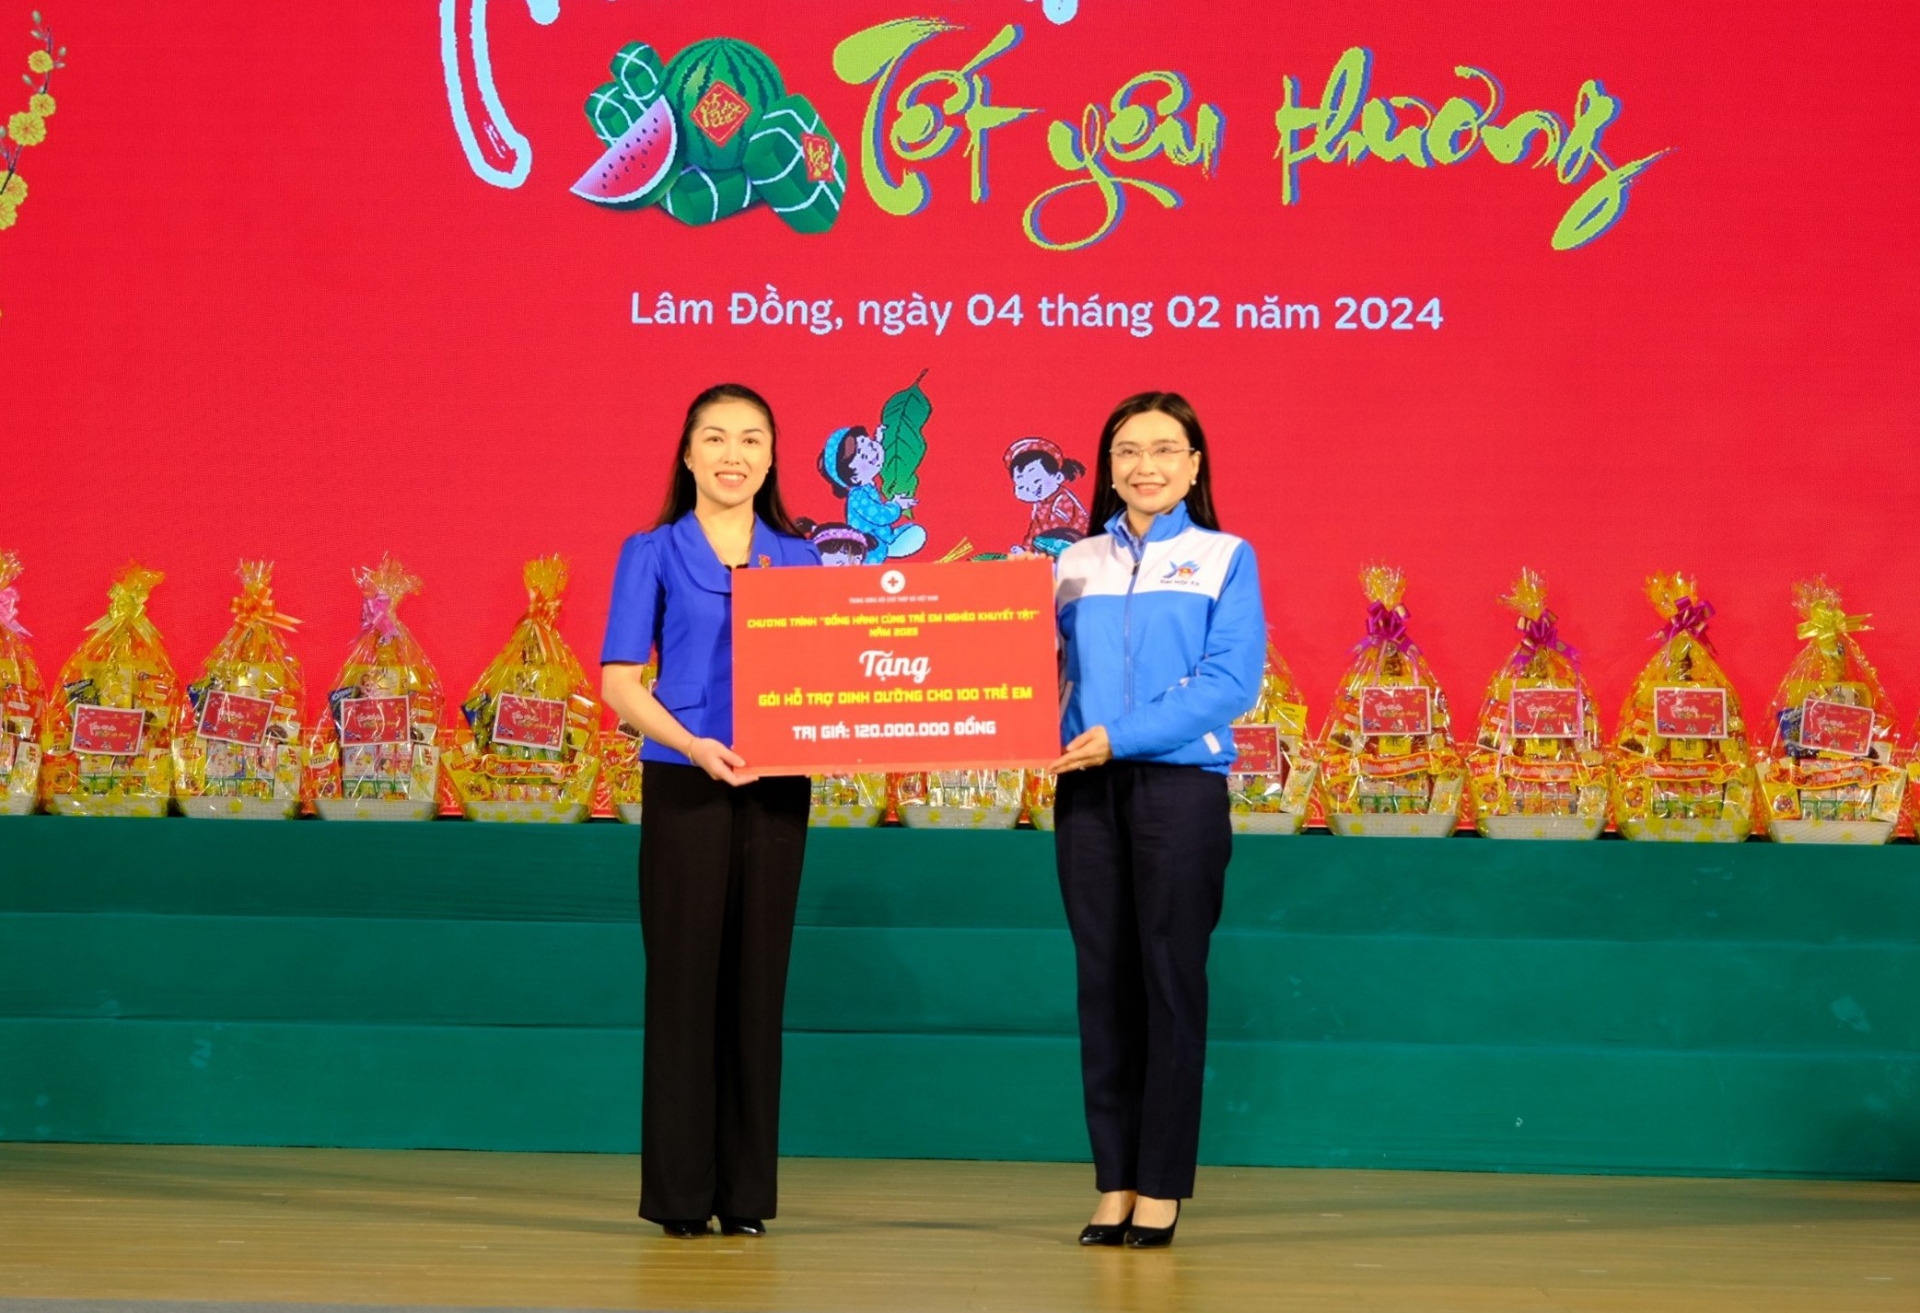 chị Nguyễn Phạm Duy Trang - Bí thư BCH Trung ương Đoàn, Chủ tịch Hội đồng Đội Trung ương trao tặng Gói hỗ trợ dinh dưỡng cho trẻ em Lâm Đồng